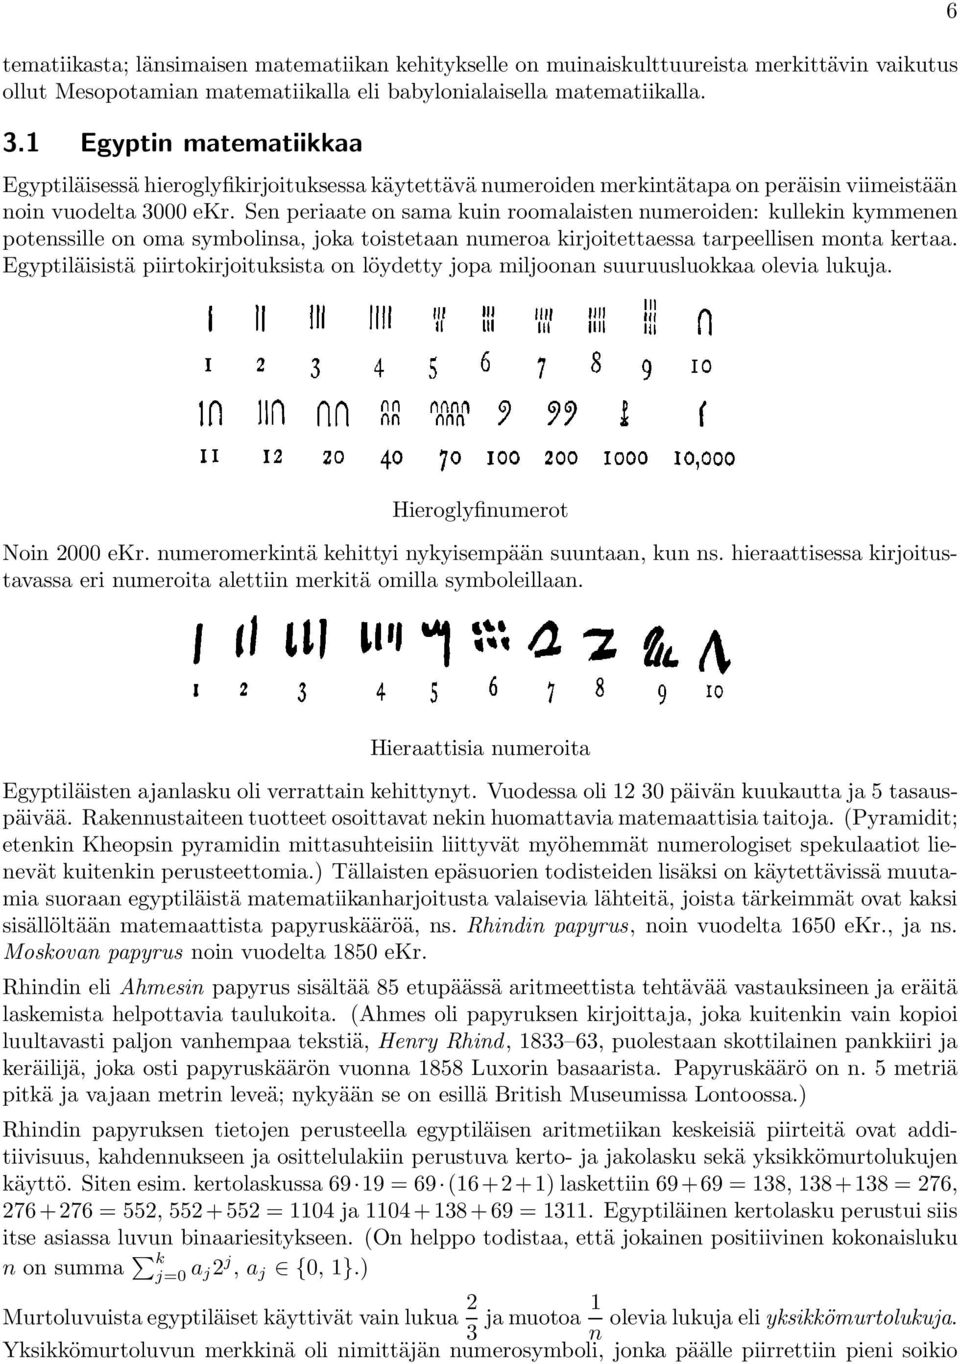 Sen periaate on sama kuin roomalaisten numeroiden: kullekin kymmenen potenssille on oma symbolinsa, joka toistetaan numeroa kirjoitettaessa tarpeellisen monta kertaa.